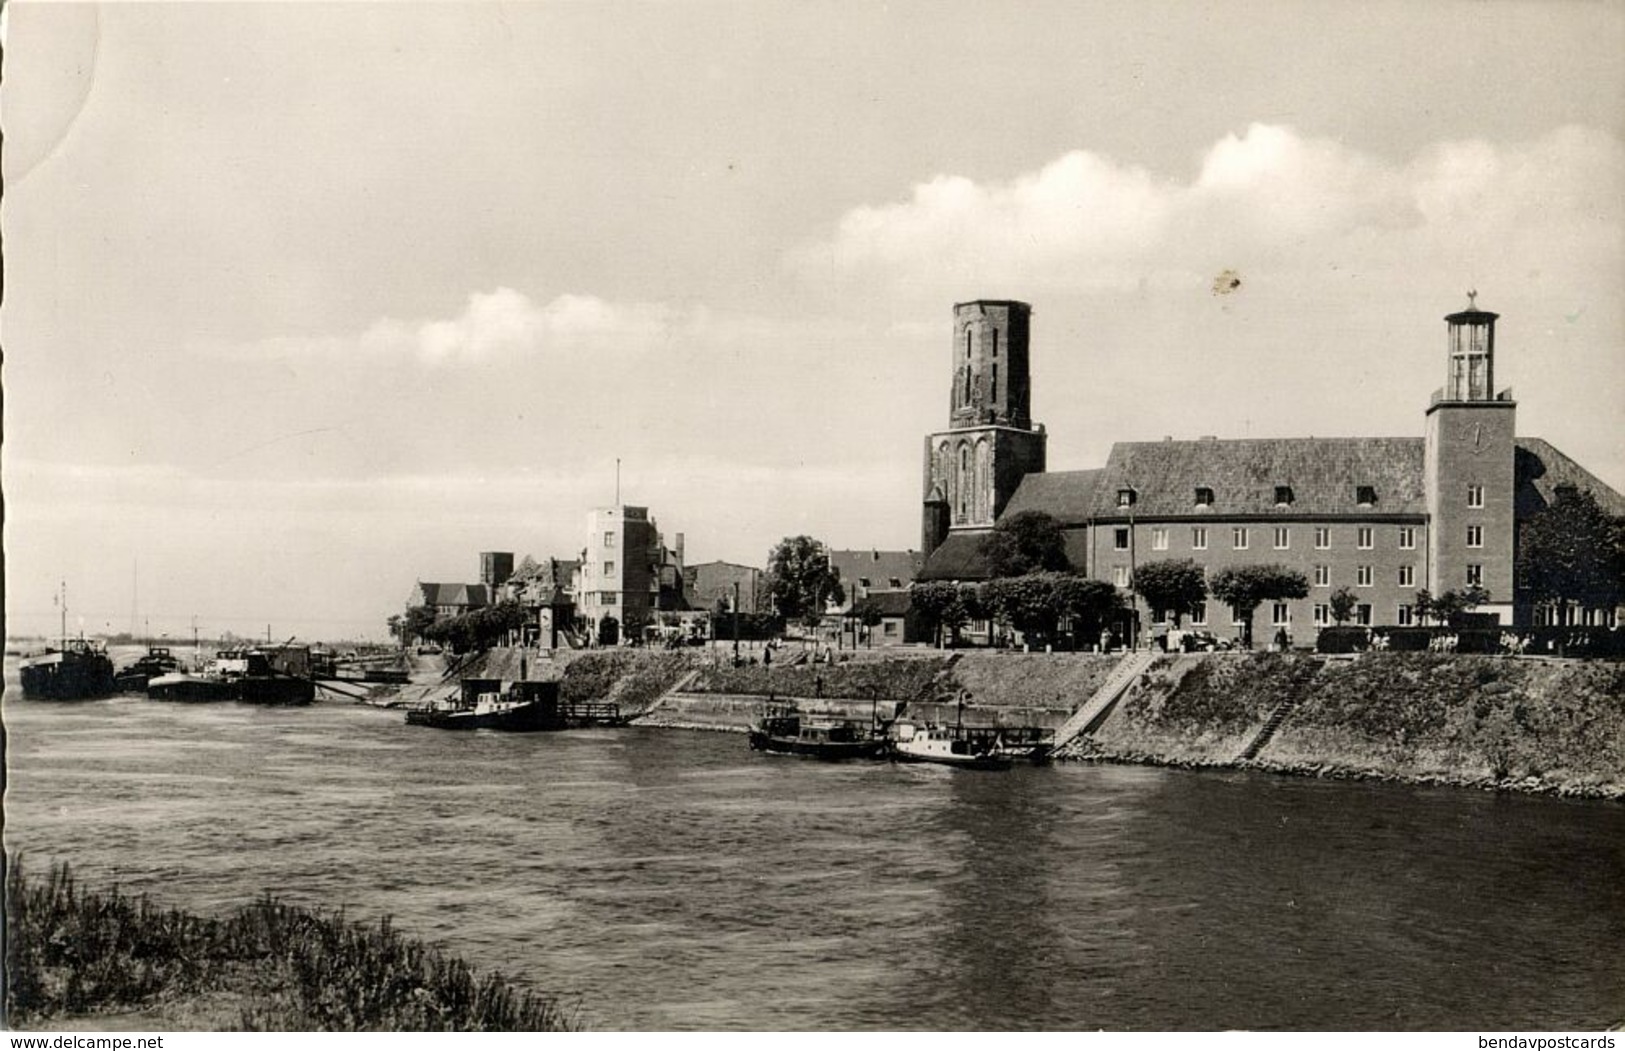 EMMERICH An Rhein, Zollamt Hafen (1950s) AK - Emmerich